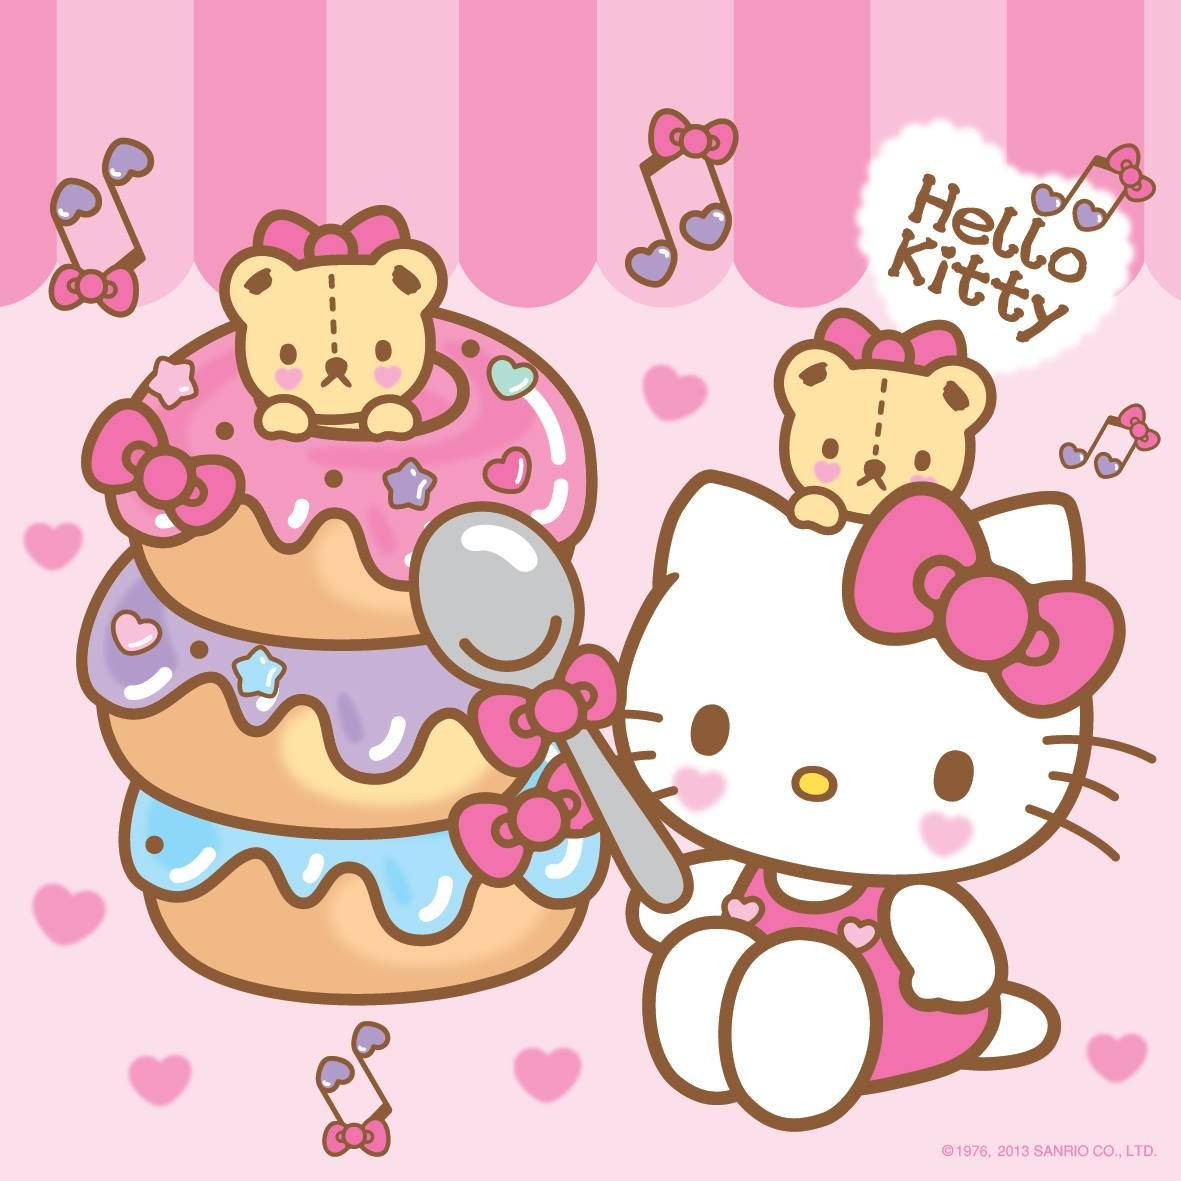 Donuts And Cartoon Hello Kitty PFP Wallpaper